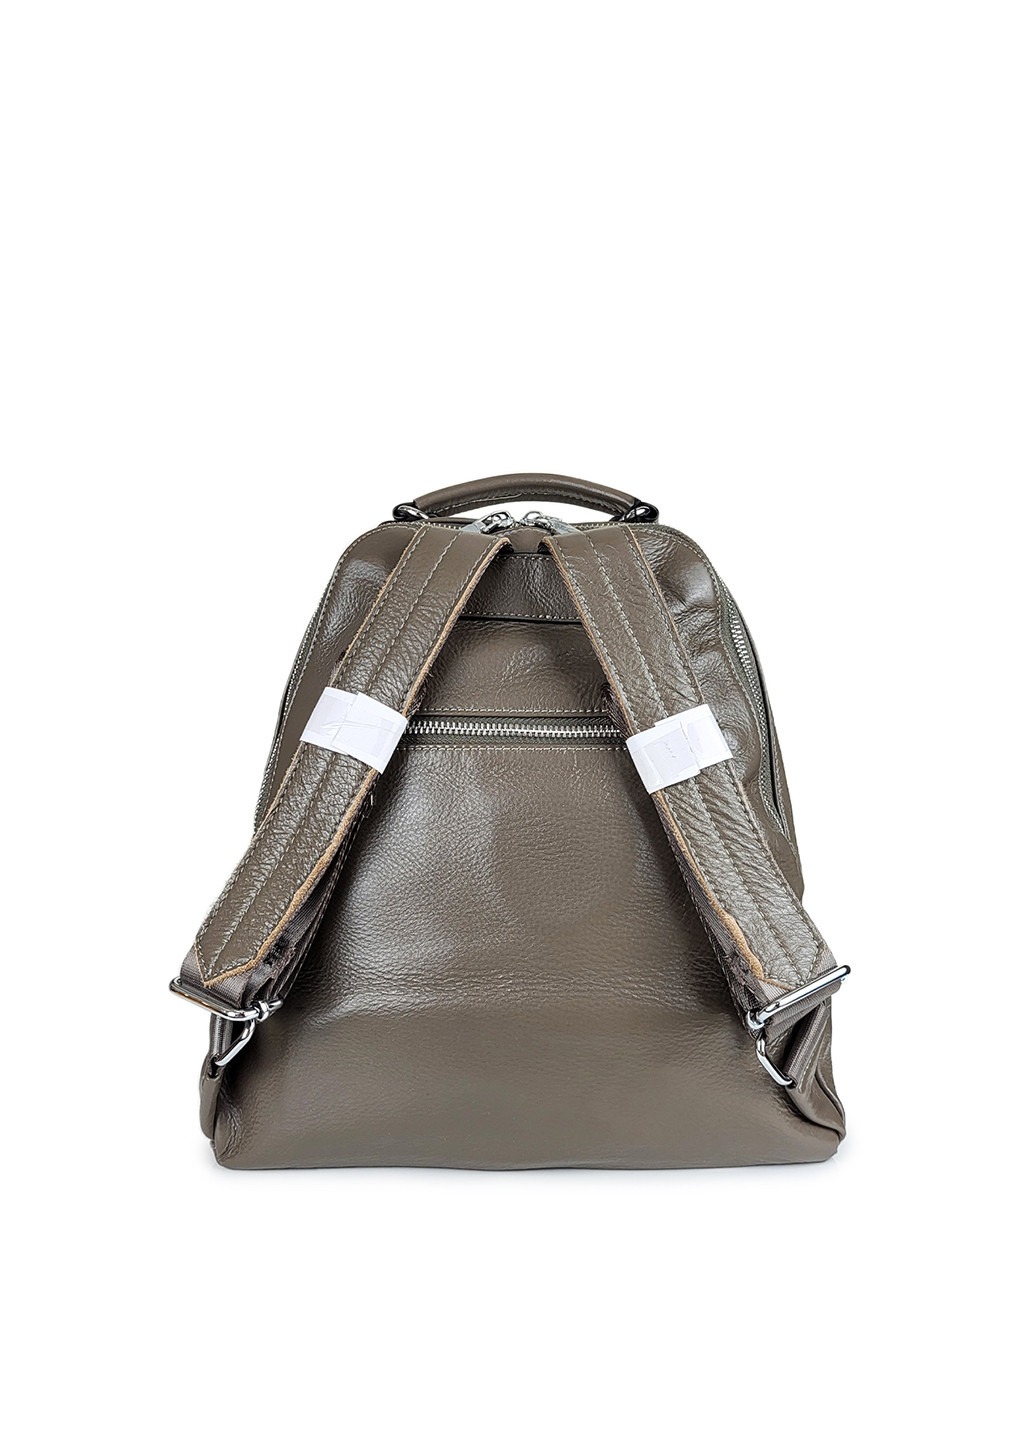 Стильный женский кожаный рюкзак хаки,,3012 хаки Fashion (269994411)